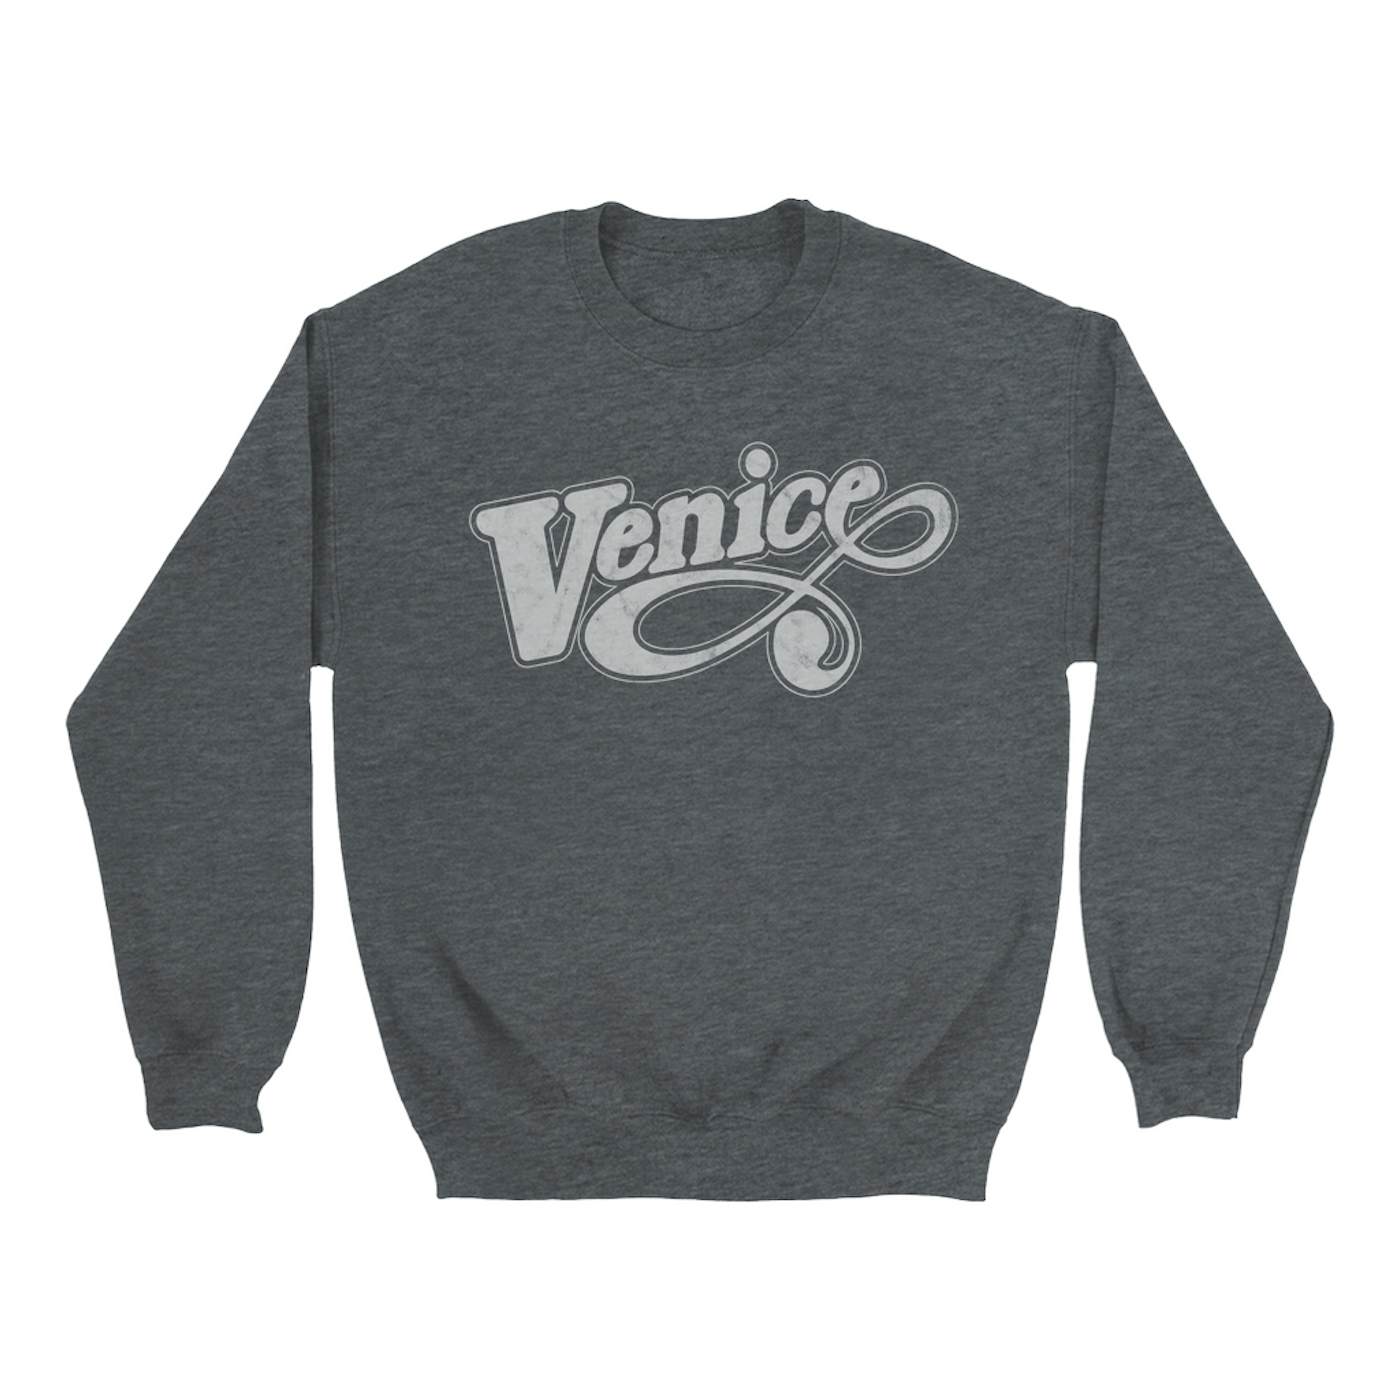 Foo Fighters Sweatshirt | Venice Worn By Taylor Hawkins Foo Fighters Sweatshirt